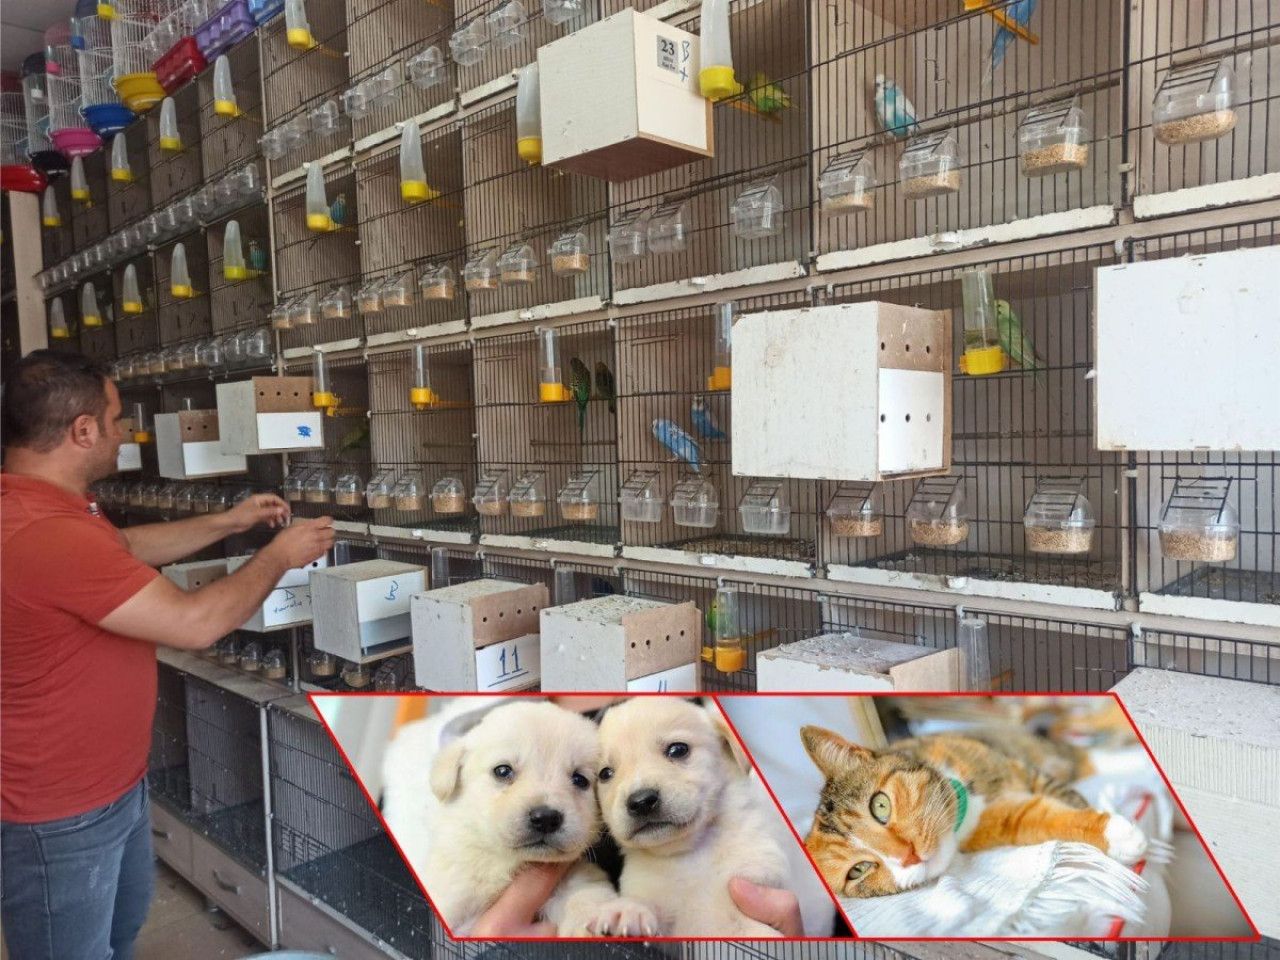 Pet shop işletenler kedi köpek satışlarının internet üzerinden de yasaklanmasını istiyor